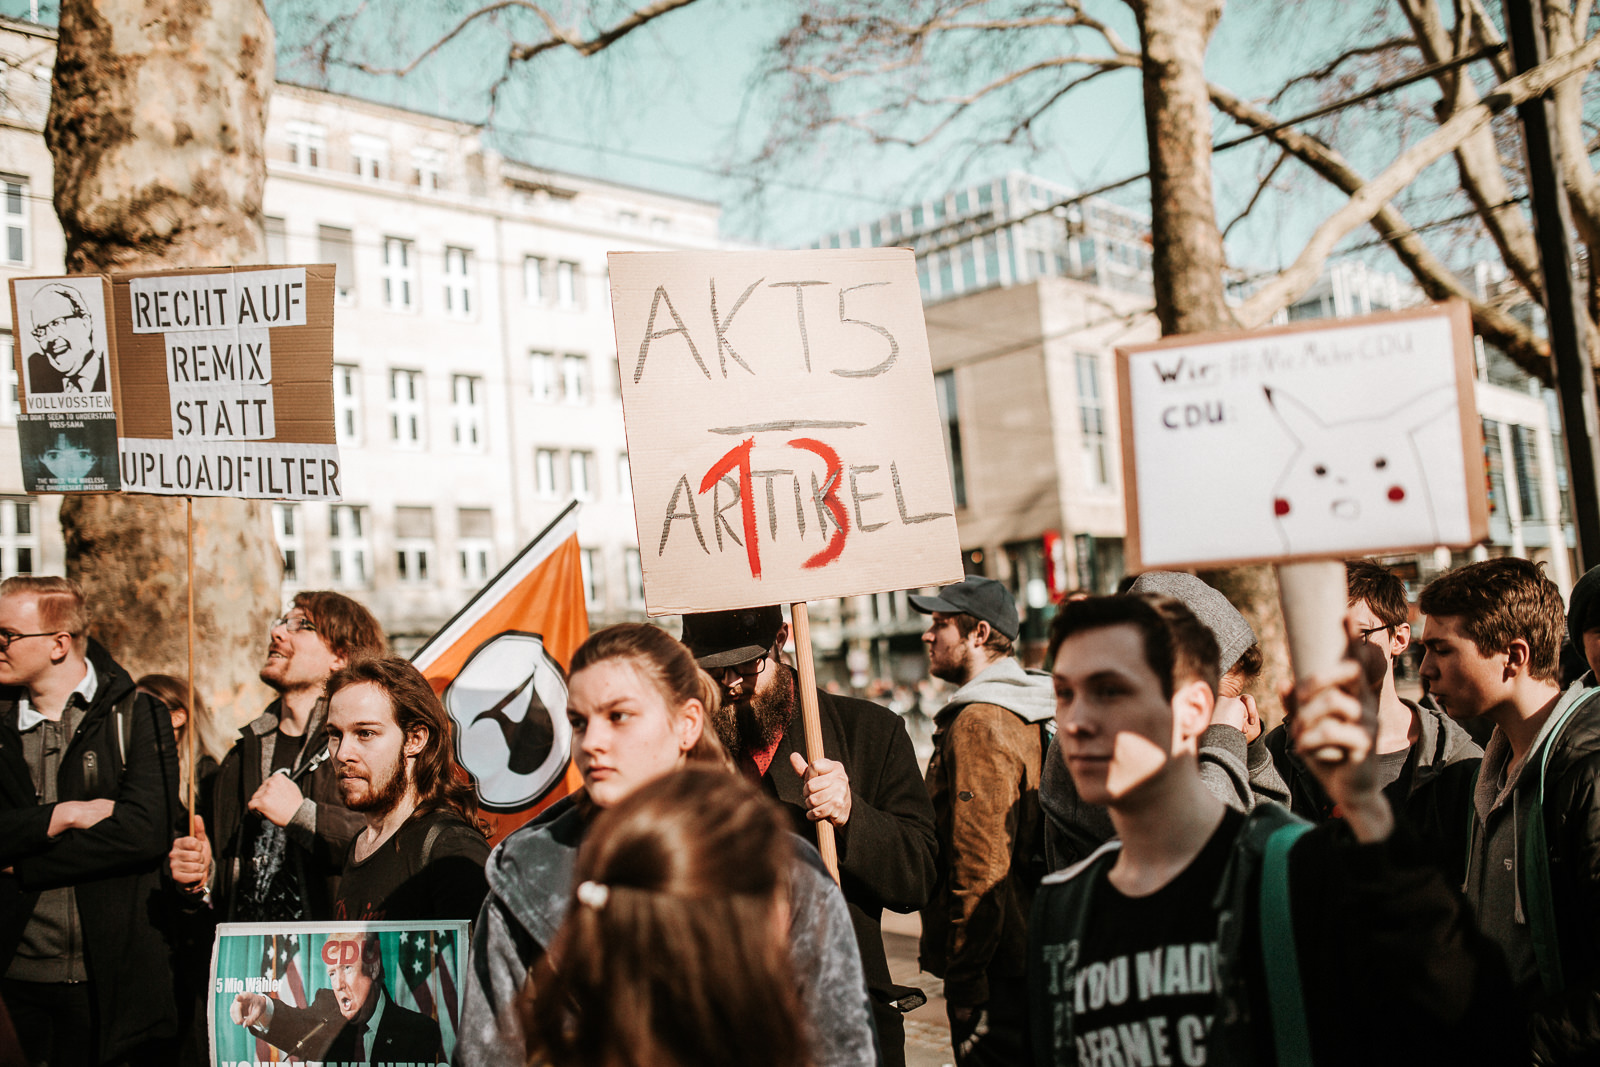 Bild von der Artikel 13-Demo in Köln am 16.2.2019